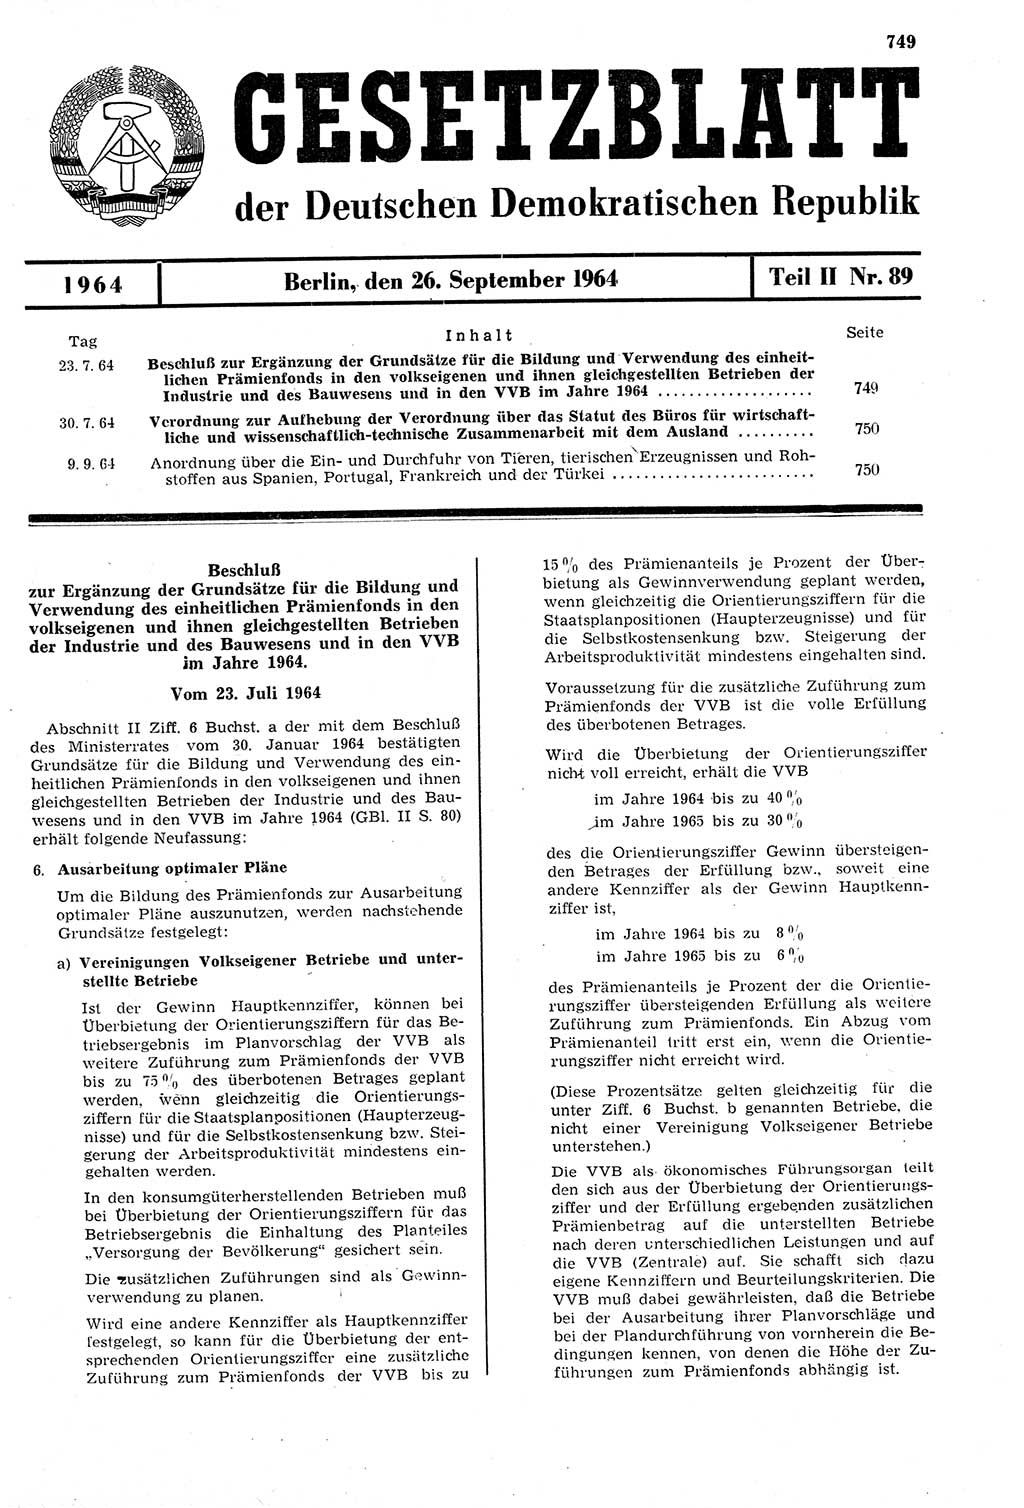 Gesetzblatt (GBl.) der Deutschen Demokratischen Republik (DDR) Teil ⅠⅠ 1964, Seite 749 (GBl. DDR ⅠⅠ 1964, S. 749)